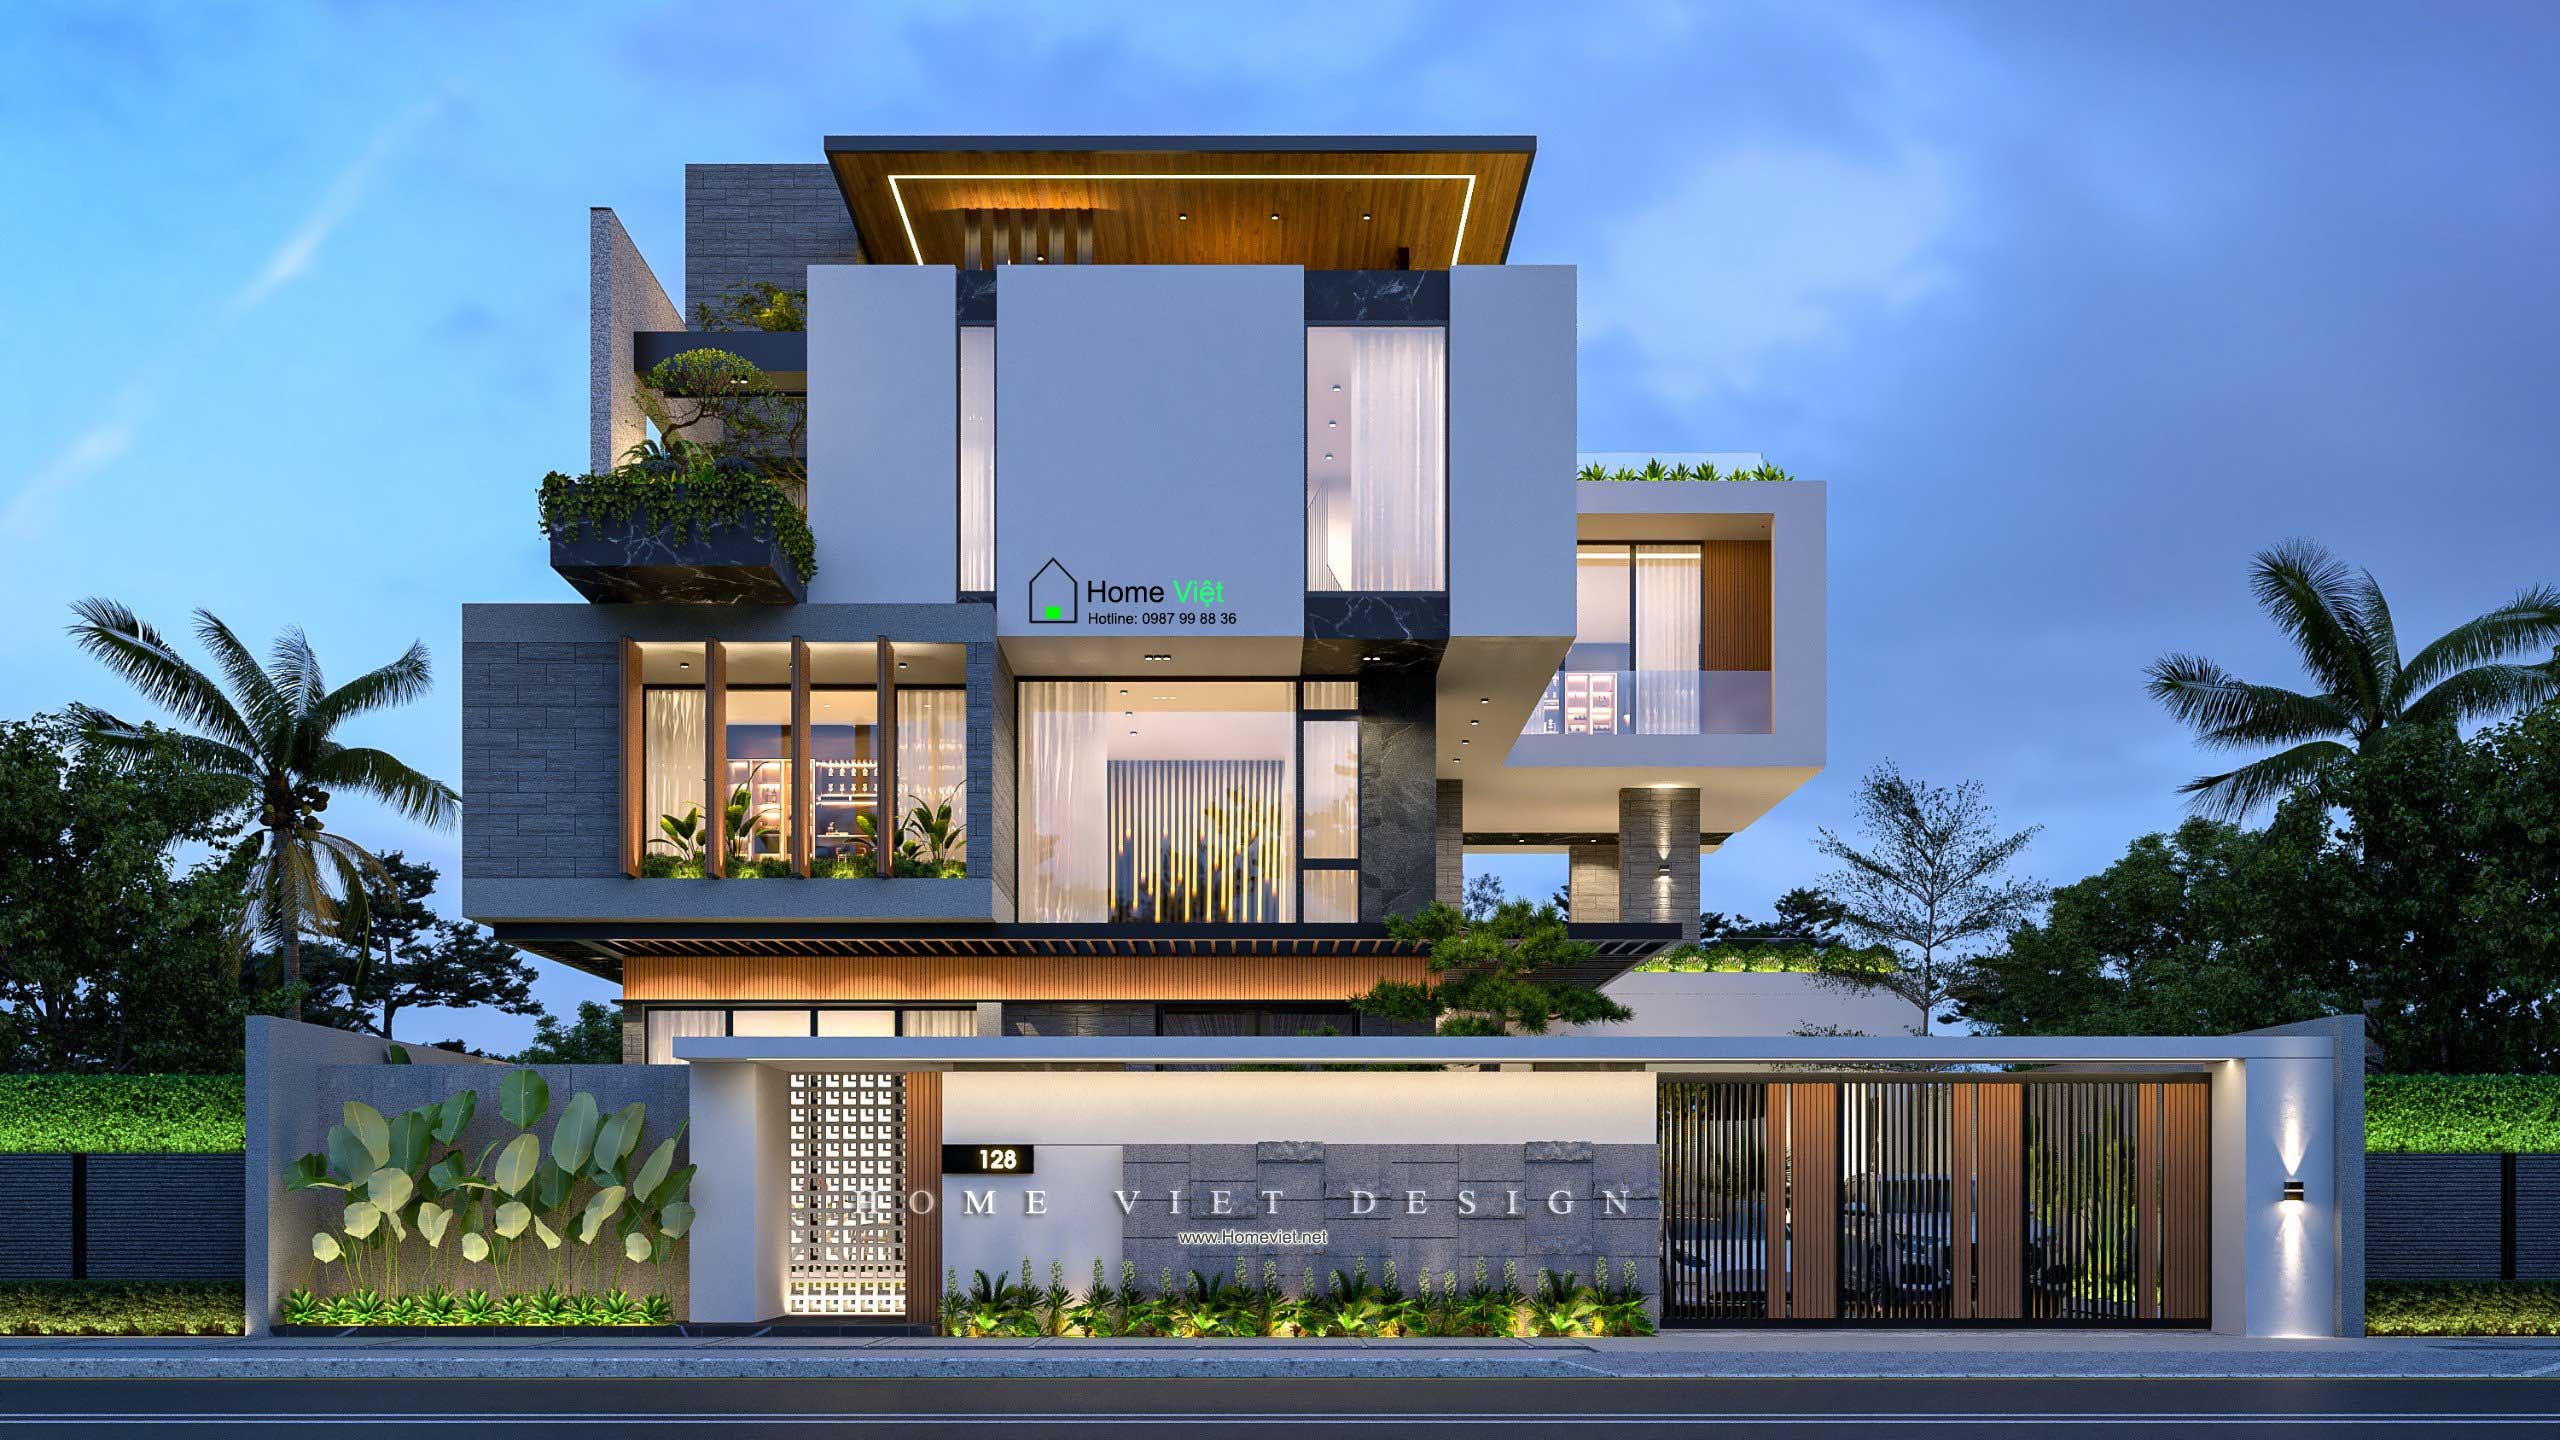 [Bảo Villa] – Công trình Biệt thự 3,5 tầng theo phong cách hiện đại nổi bật khu vực tại An Dương, Hải Phòng